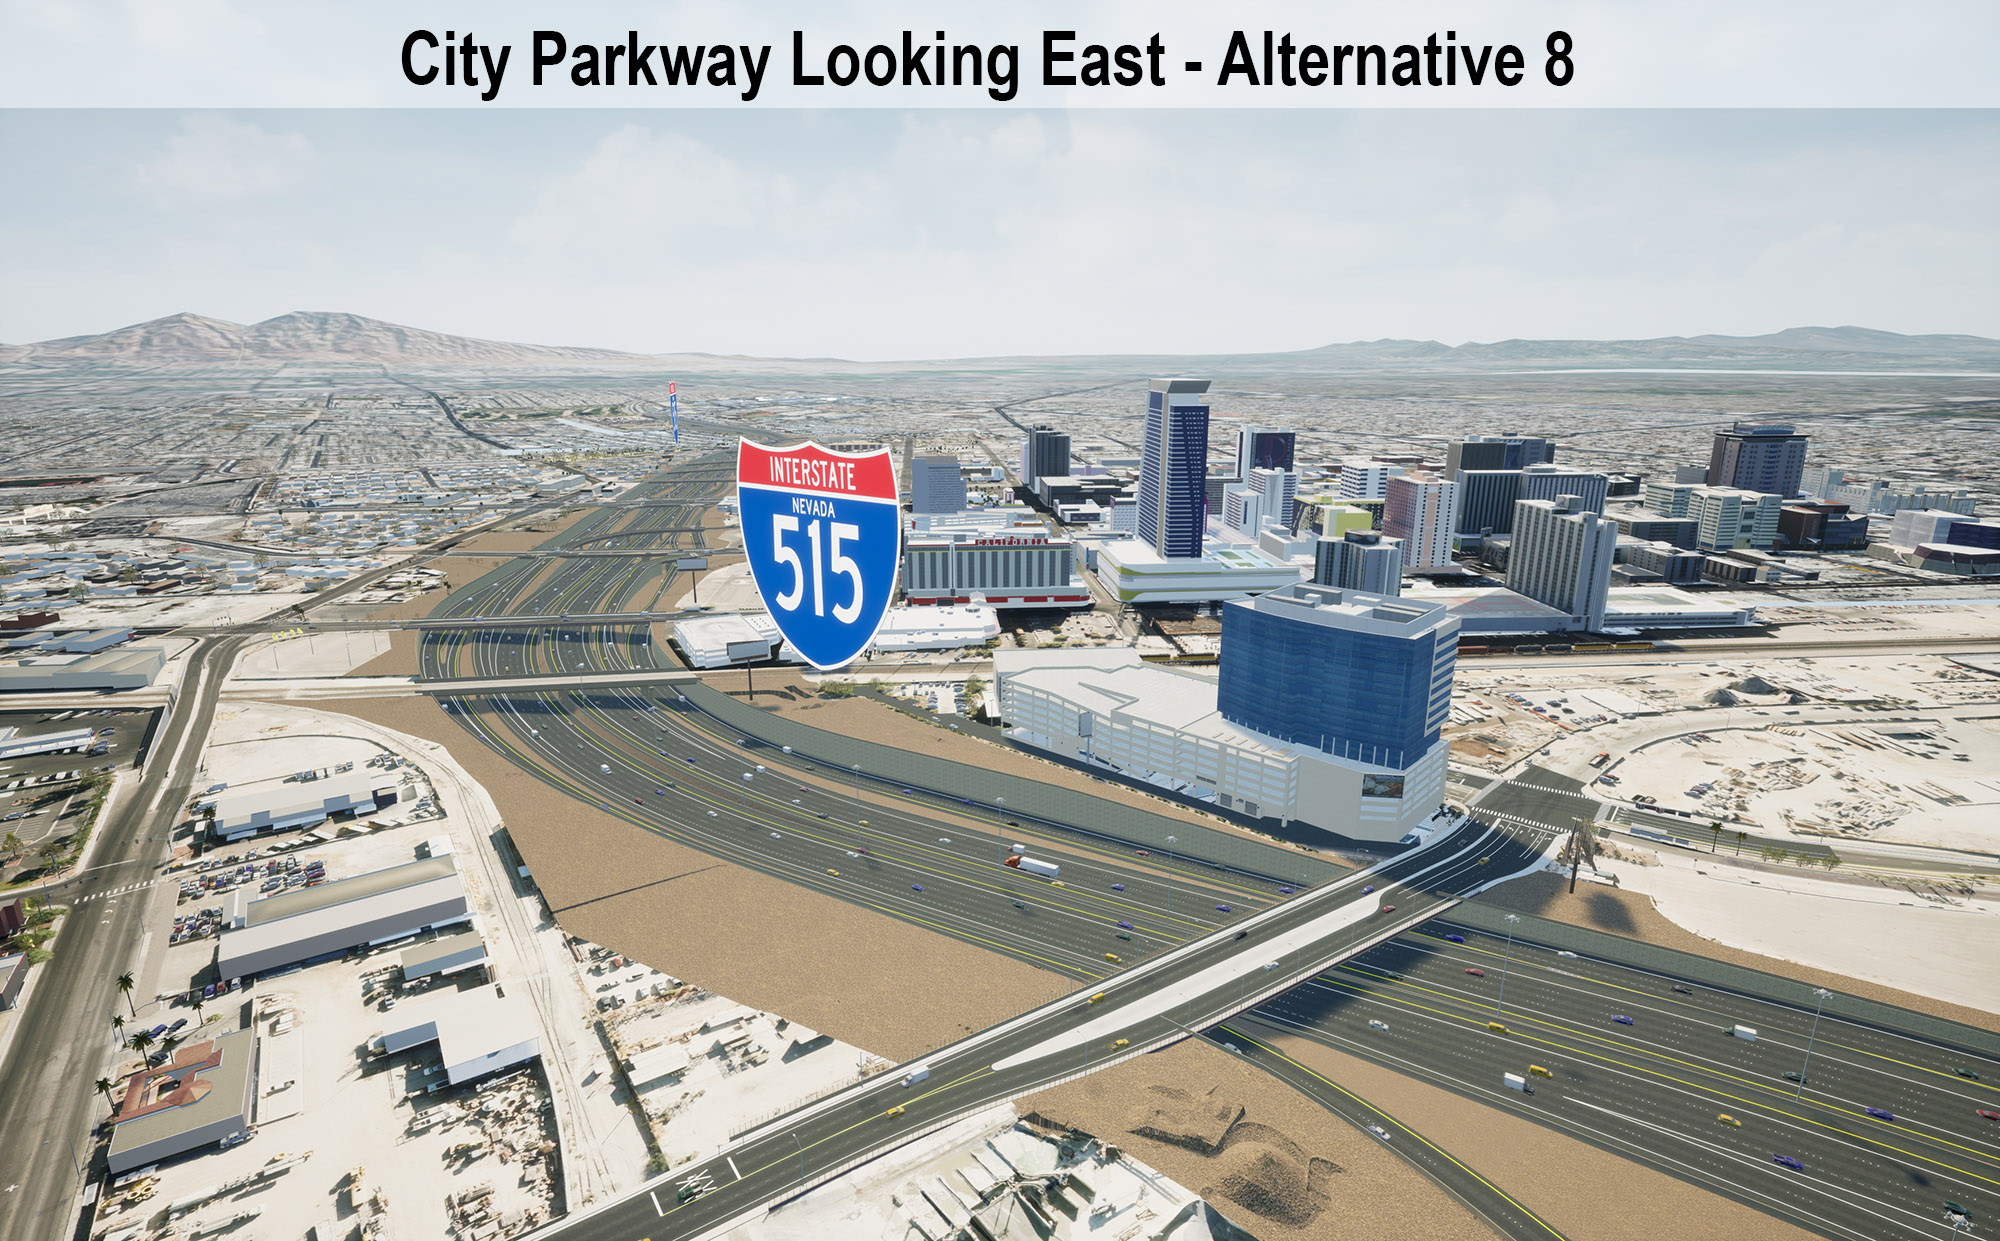 City Parkway Looking East - Alternative 8